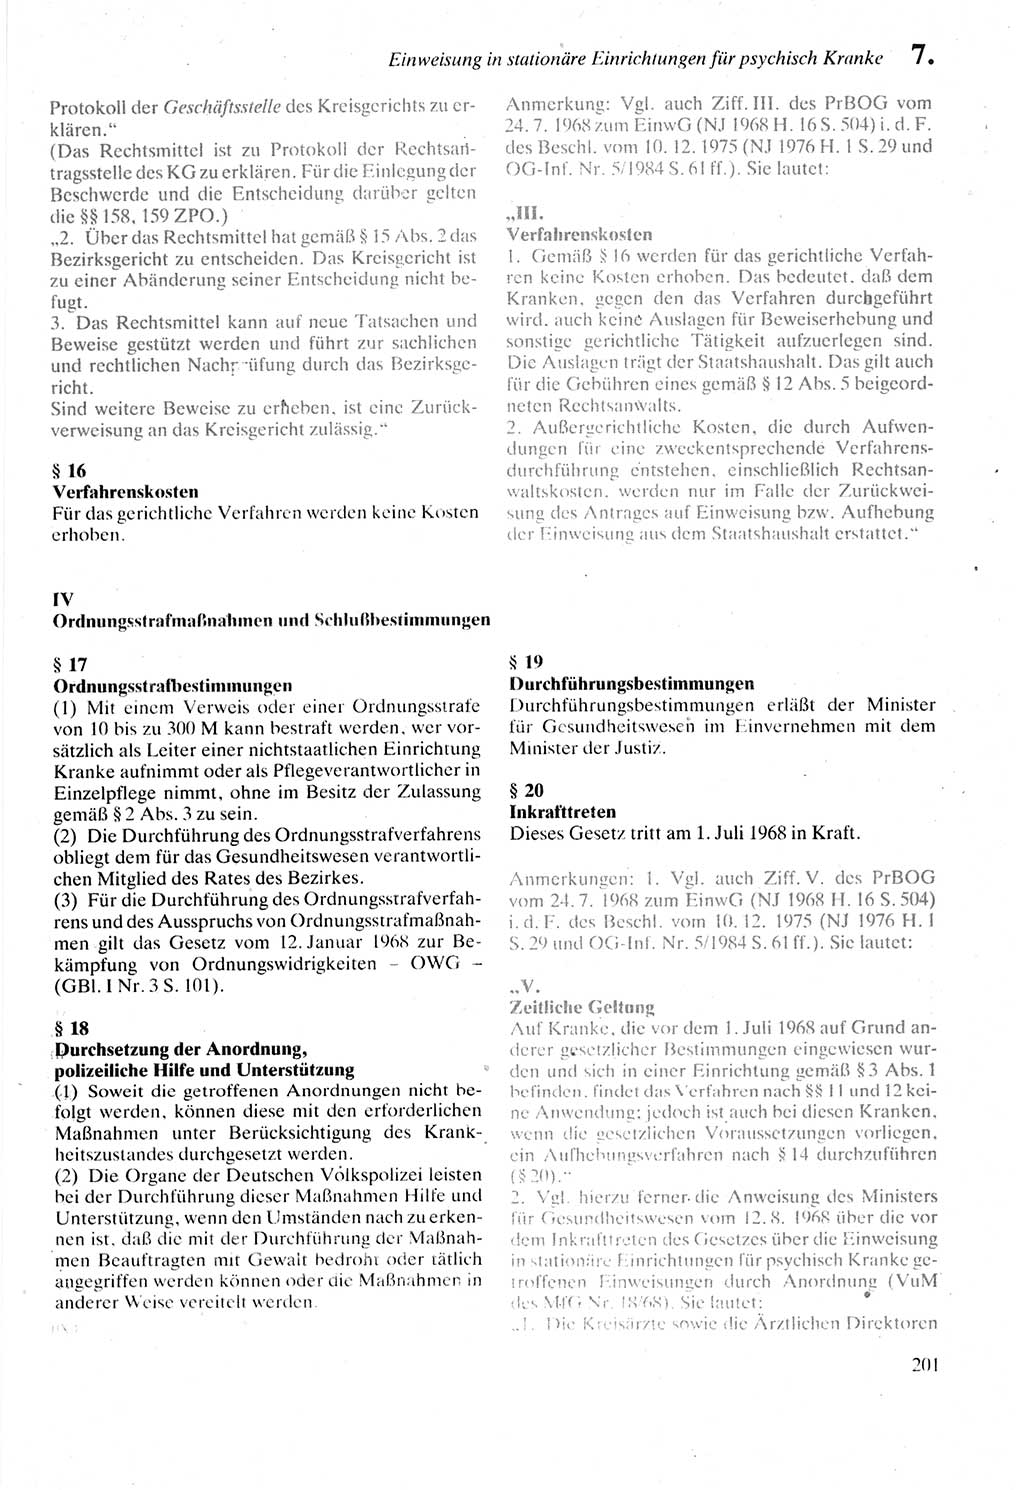 Strafprozeßordnung (StPO) der Deutschen Demokratischen Republik (DDR) sowie angrenzende Gesetze und Bestimmungen 1987, Seite 201 (StPO DDR Ges. Best. 1987, S. 201)